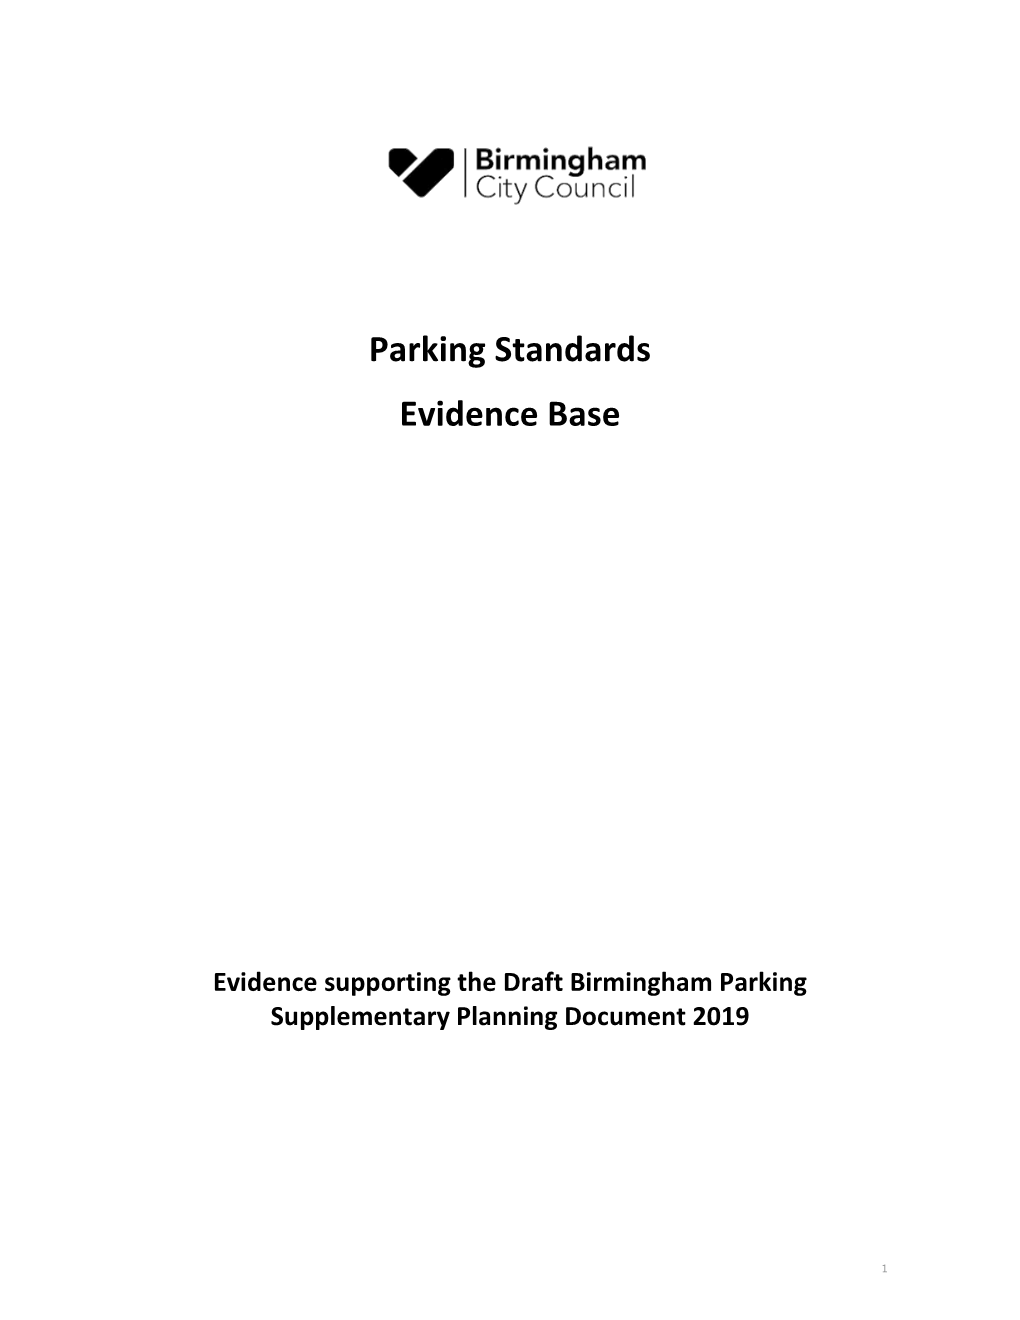 Parking Standards Evidence Base